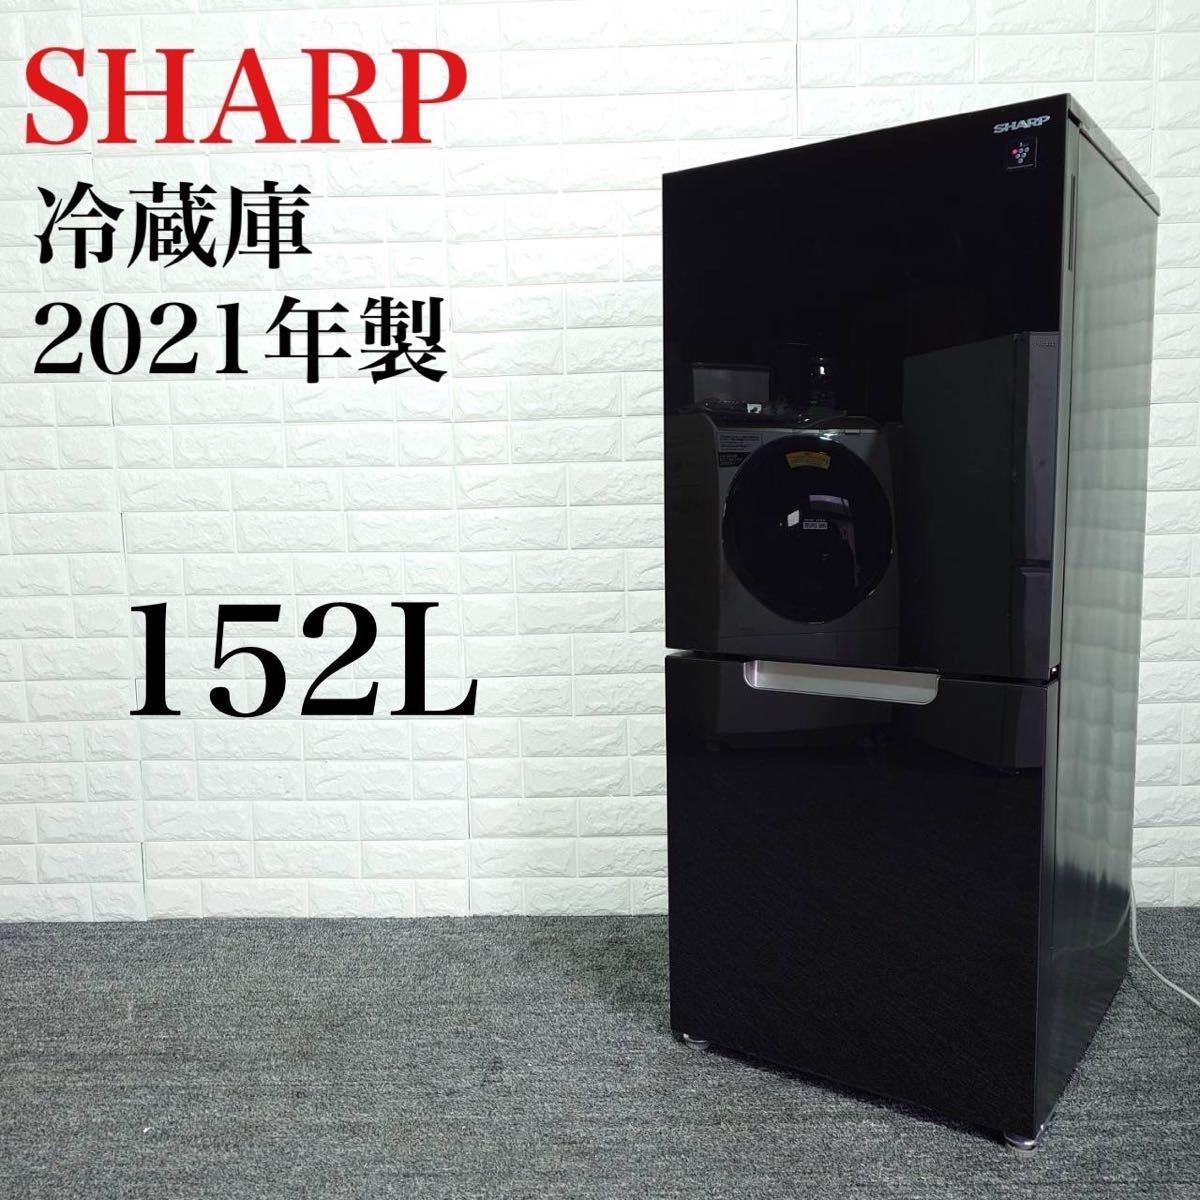 SHARP 冷蔵庫 SJ-GD15G-B 152L 2021年製 B097